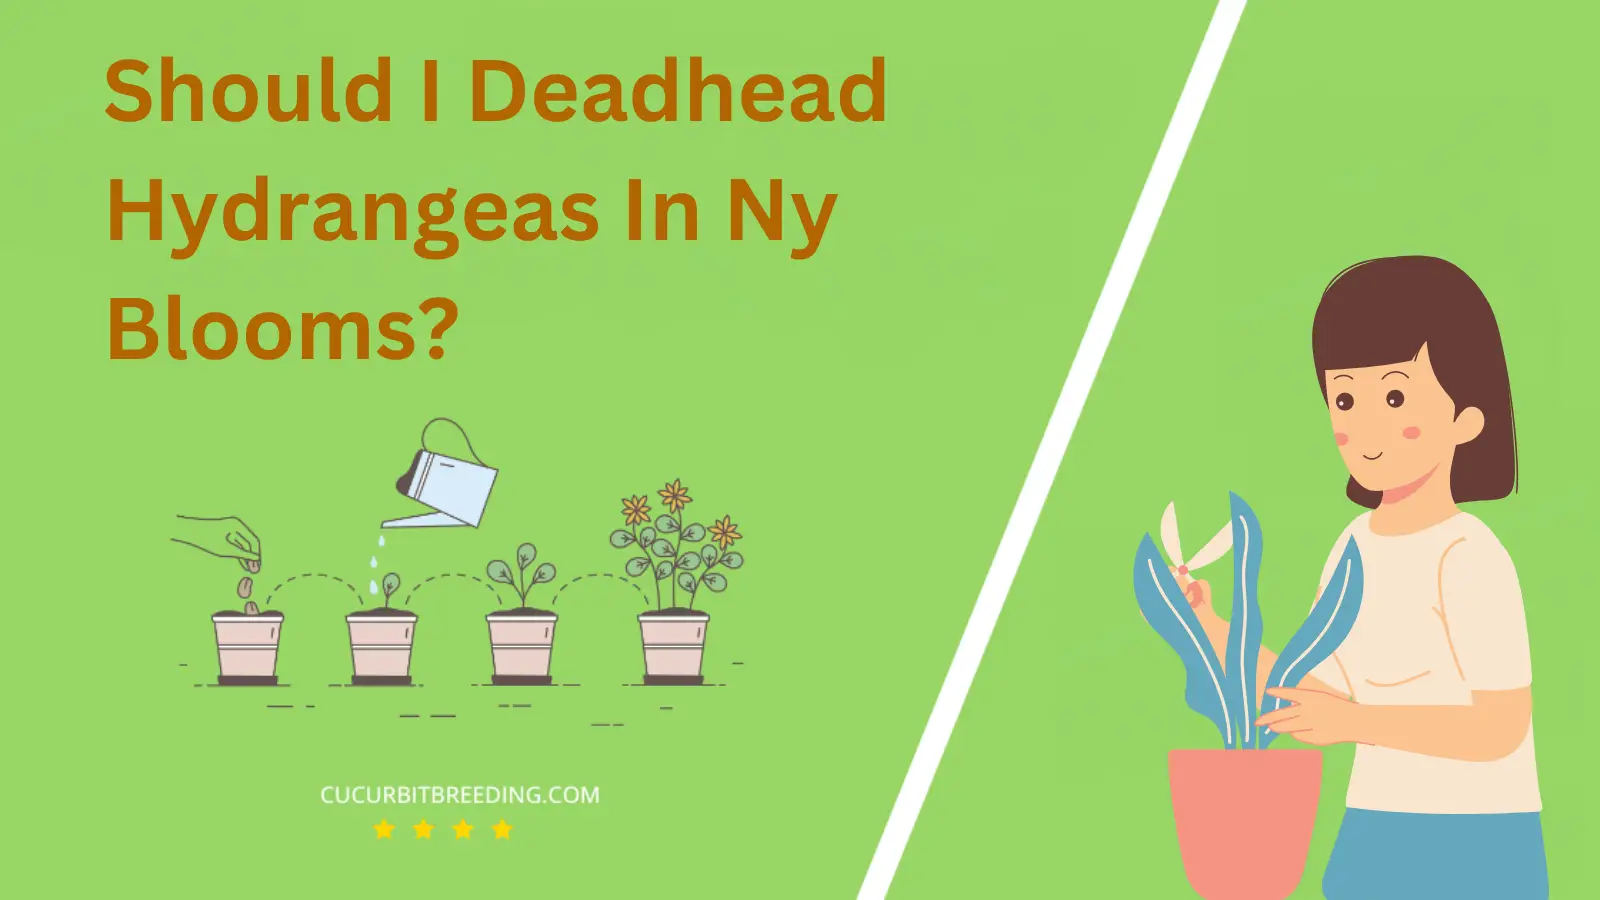 Should I Deadhead Hydrangeas In Ny Blooms?